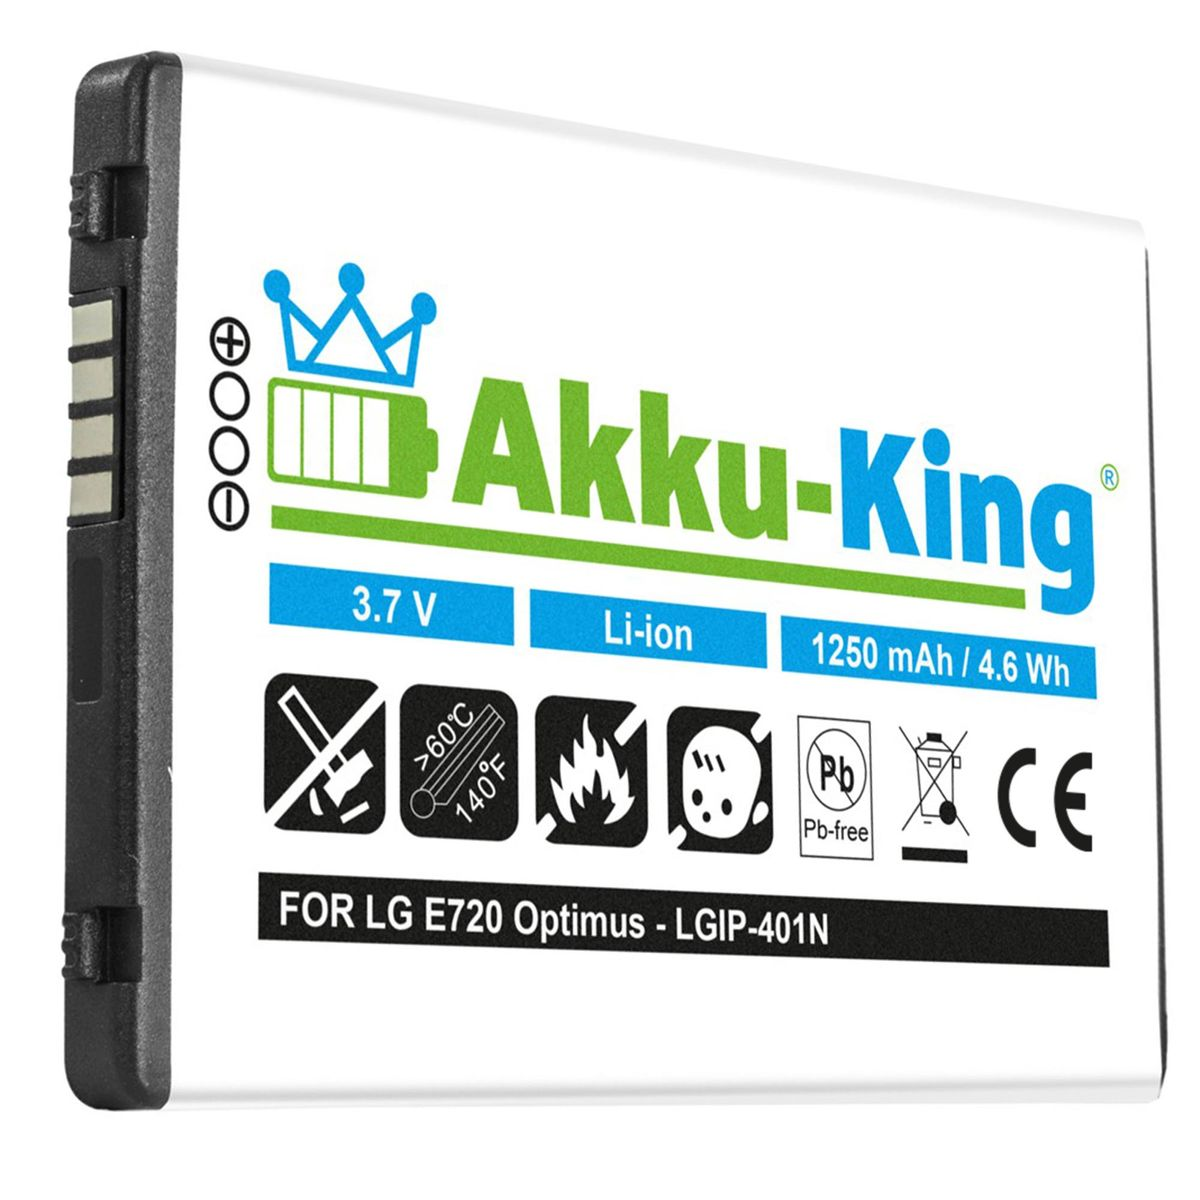 AKKU-KING Akku kompatibel LGIP-401N LG mit 1250mAh Volt, Li-Ion 3.7 Handy-Akku